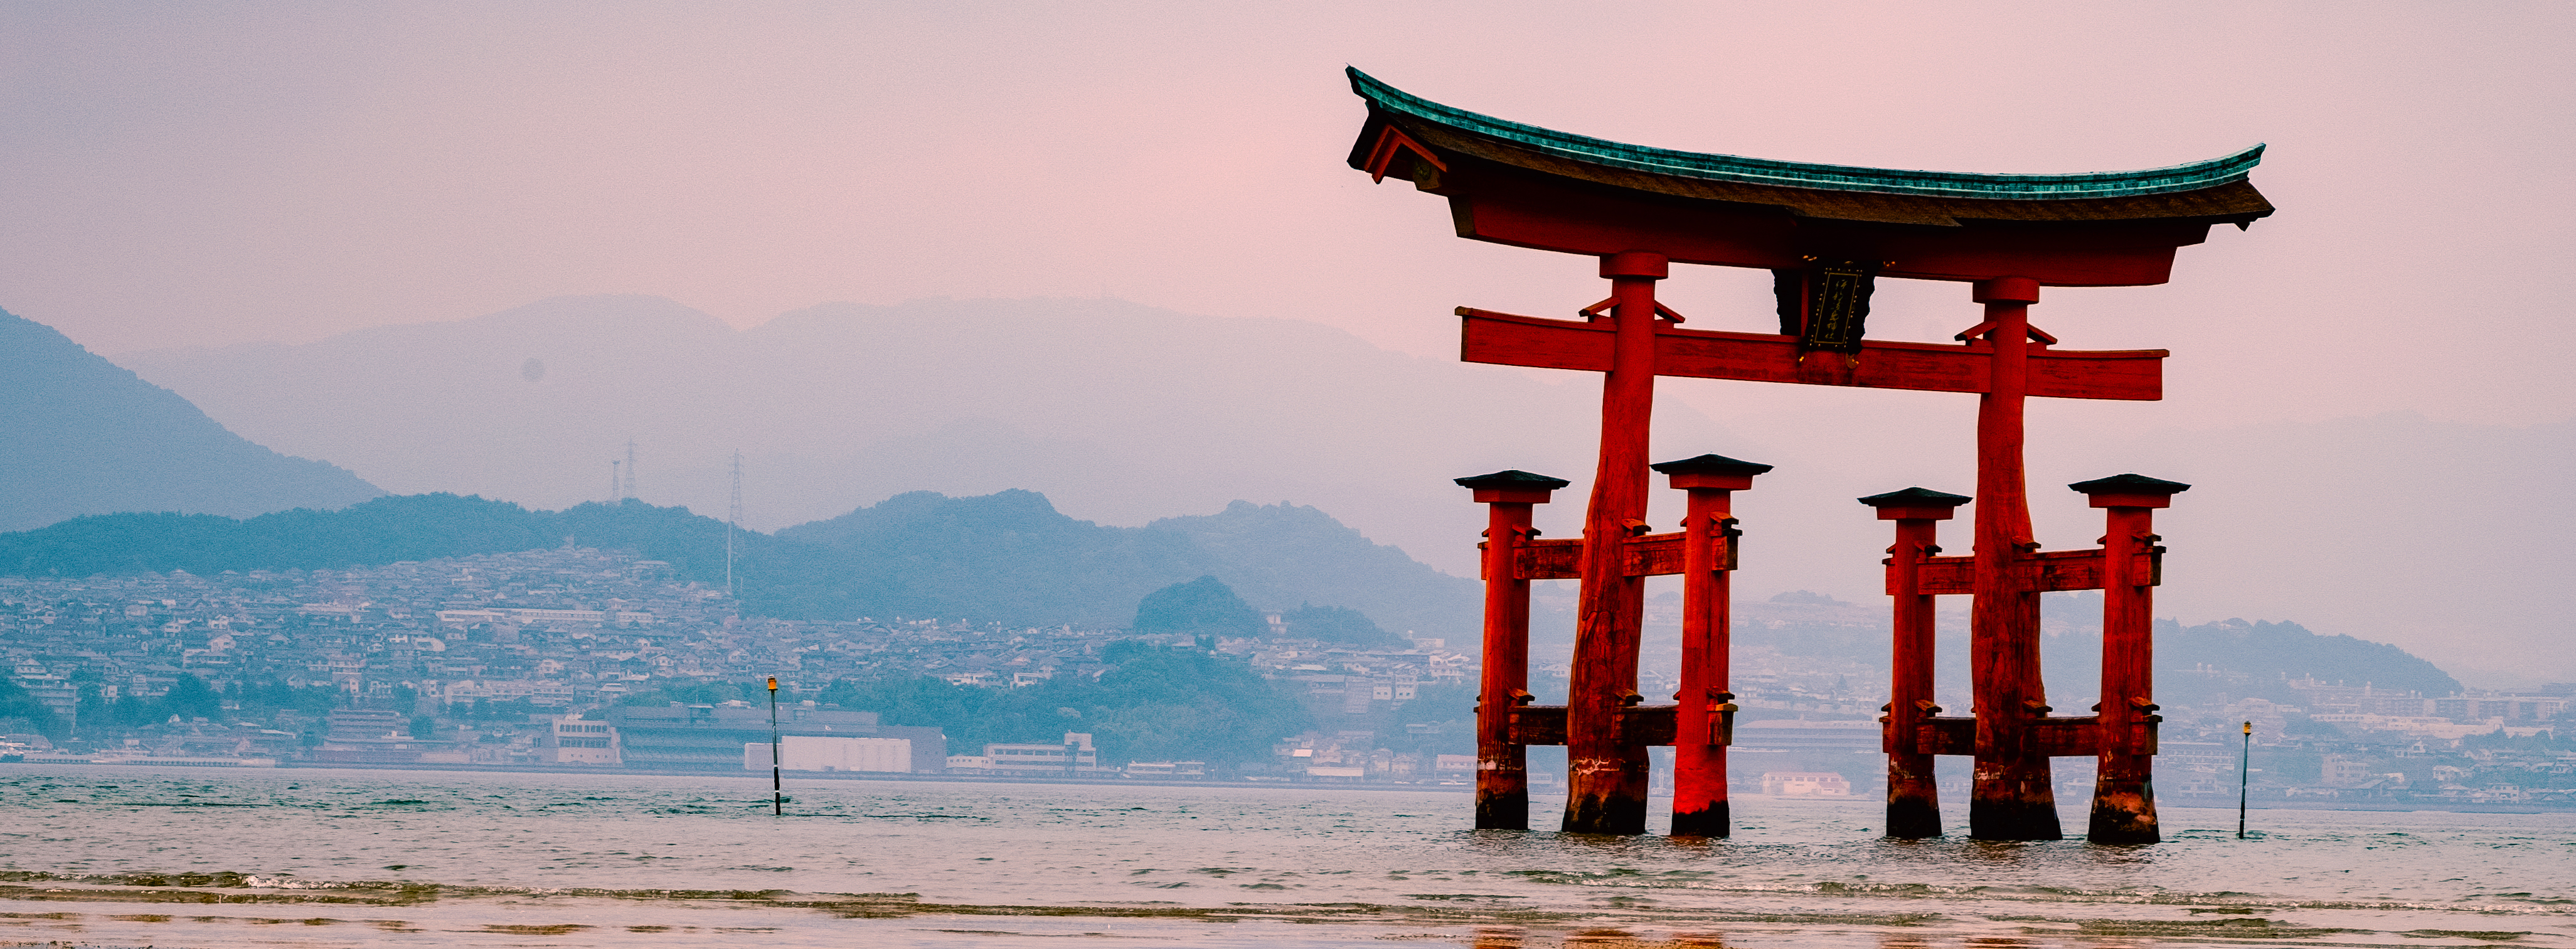 The red floating torii gate of the Itsukushima Shrine at low tide on Miyajima Island near Hiroshima.